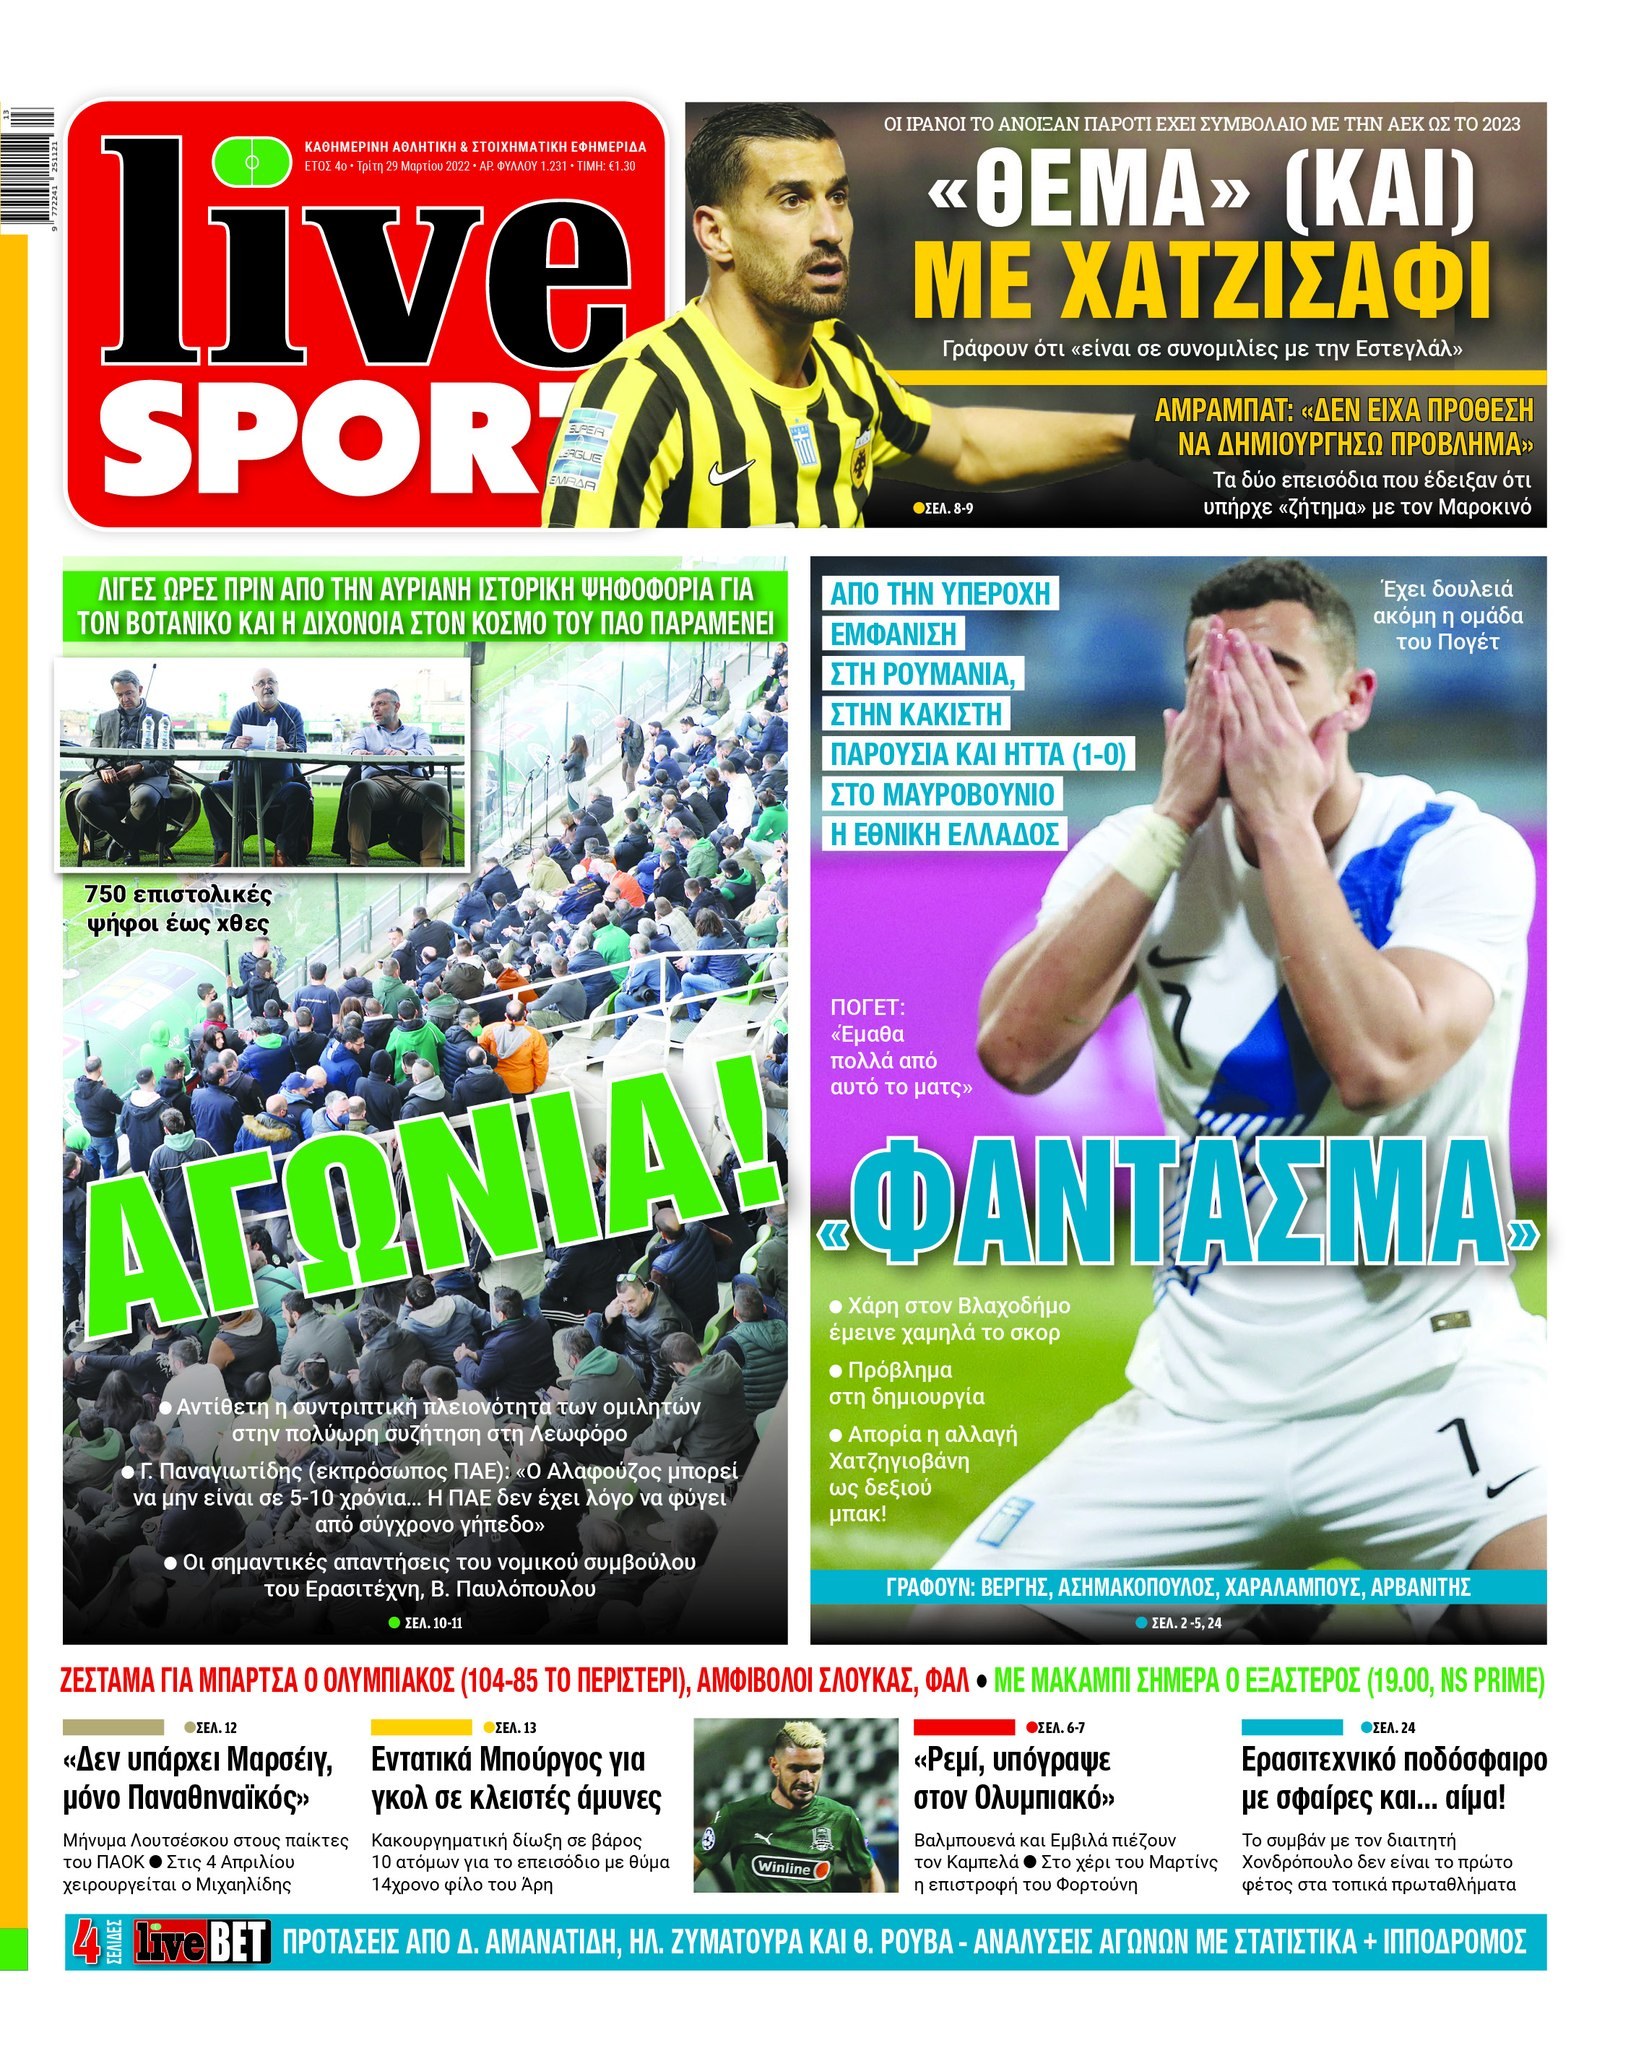 Πρωτοσέλιδα αθλητικών εφημερίδων για την Τρίτη 29 Μαρτίου 2022. Τι αναφέρουν στη… βιτρίνα τους οι εφημερίδες σε Αθήνα και Θεσσαλονίκη.